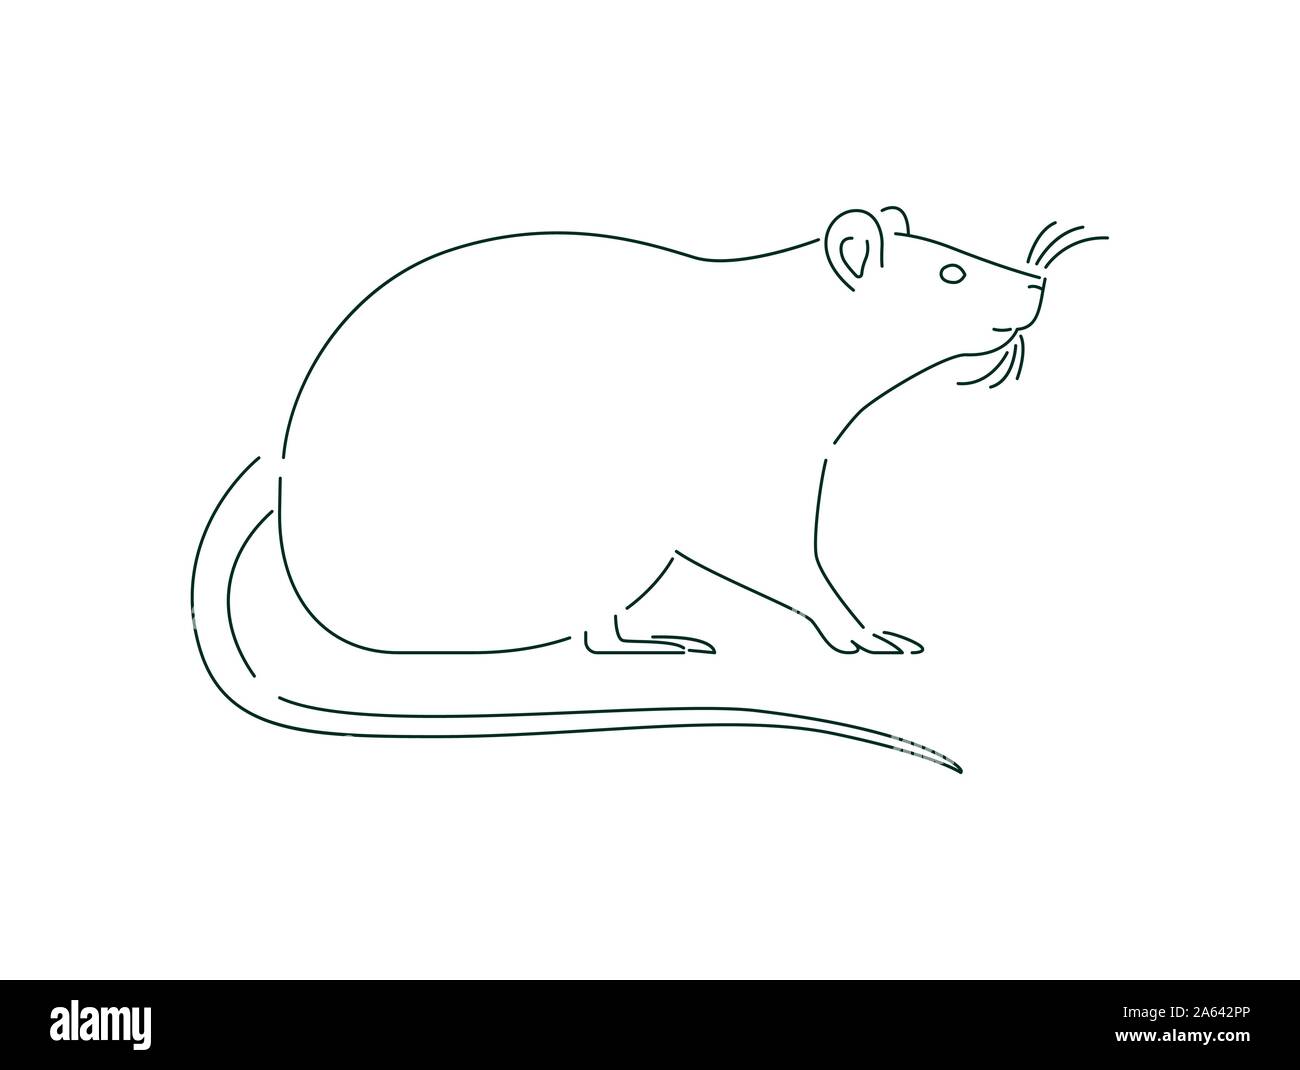 Ratte Tier Abbildung in schwarzer Umriss Stil. Minimalistische Hand gezeichnet einfache Maus Design auf isolierten weißen Hintergrund. Stock Vektor